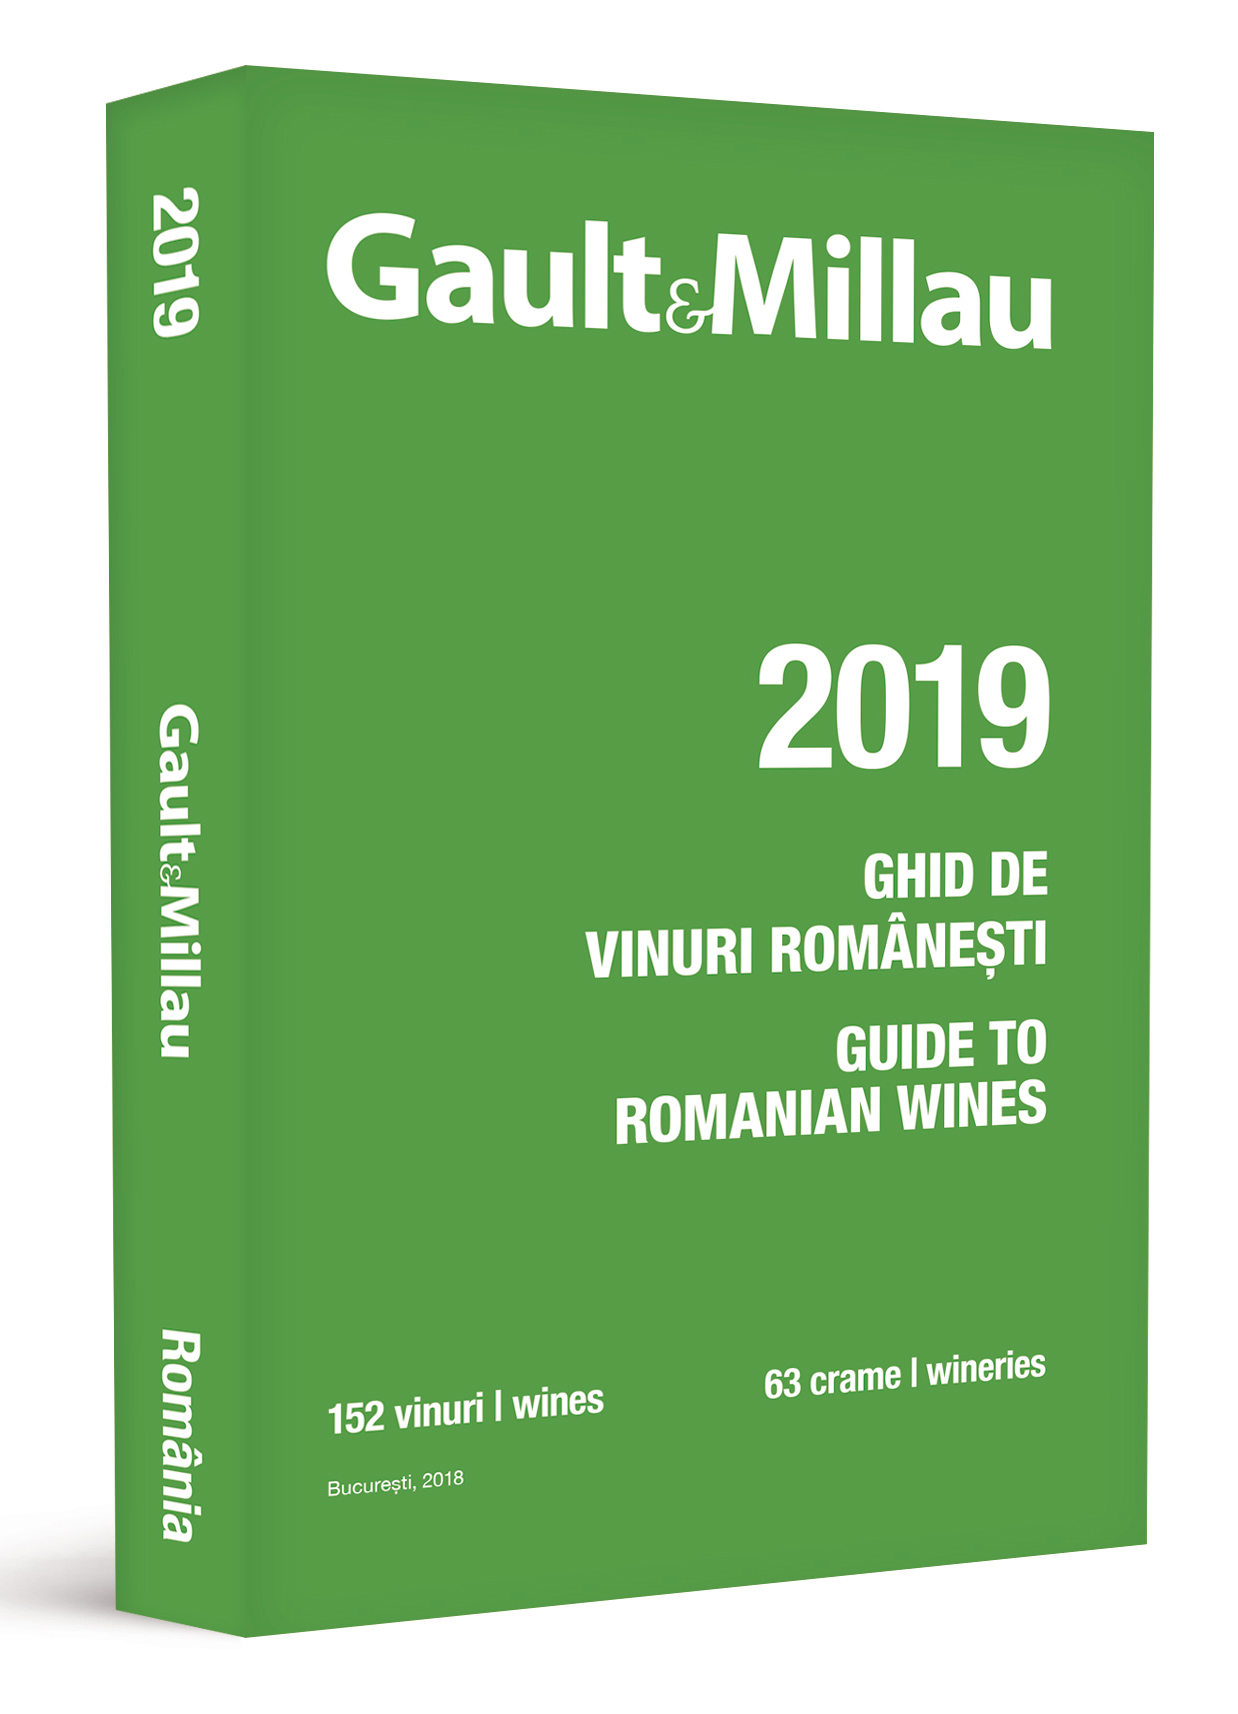 Ghidul Gault&Millau – Ghidul vinurilor romanesti 2019 | de la carturesti imagine 2021